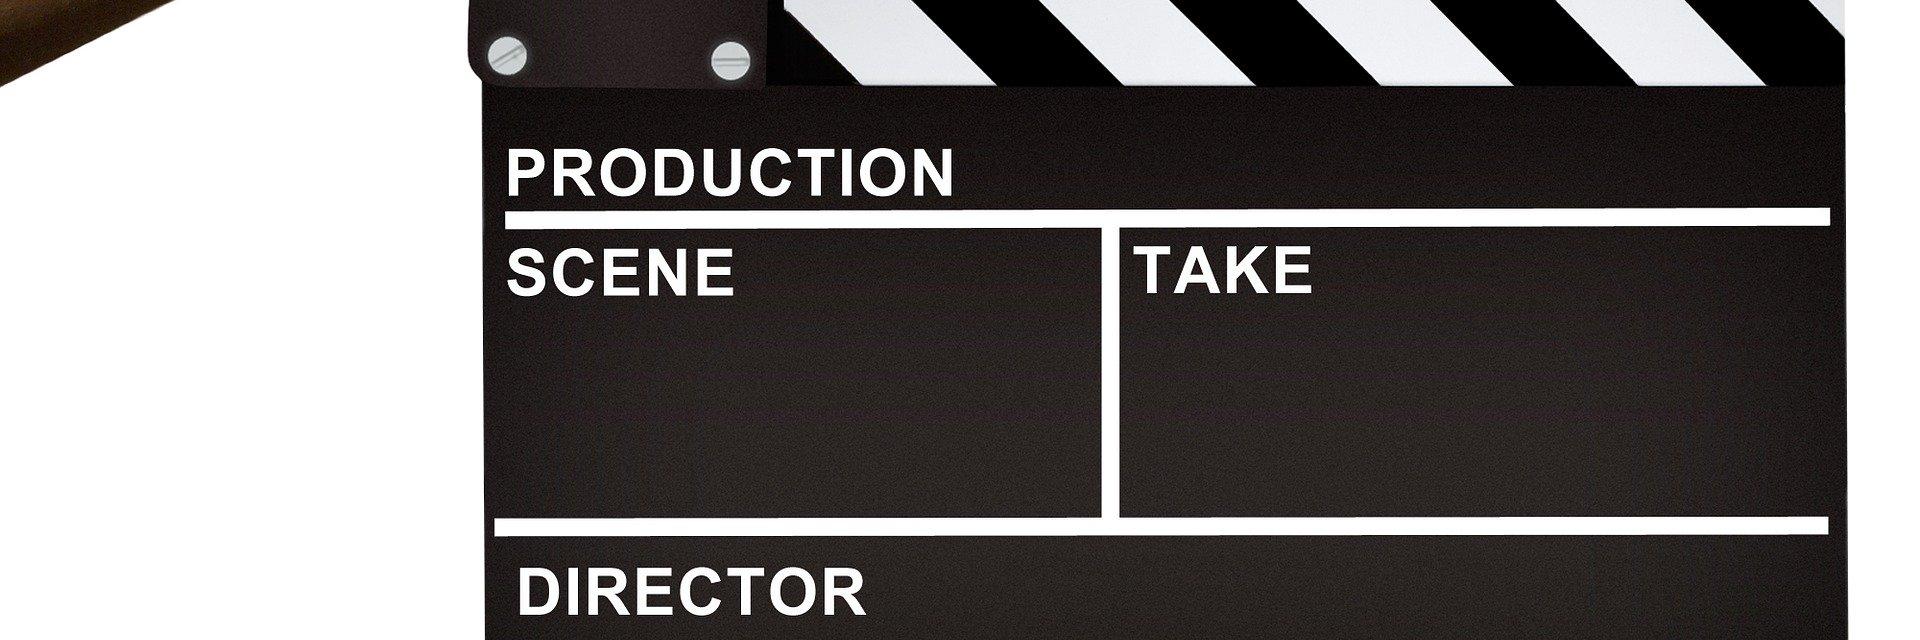 Filmklappe (c) Bild von Mediamodifier auf Pixabay